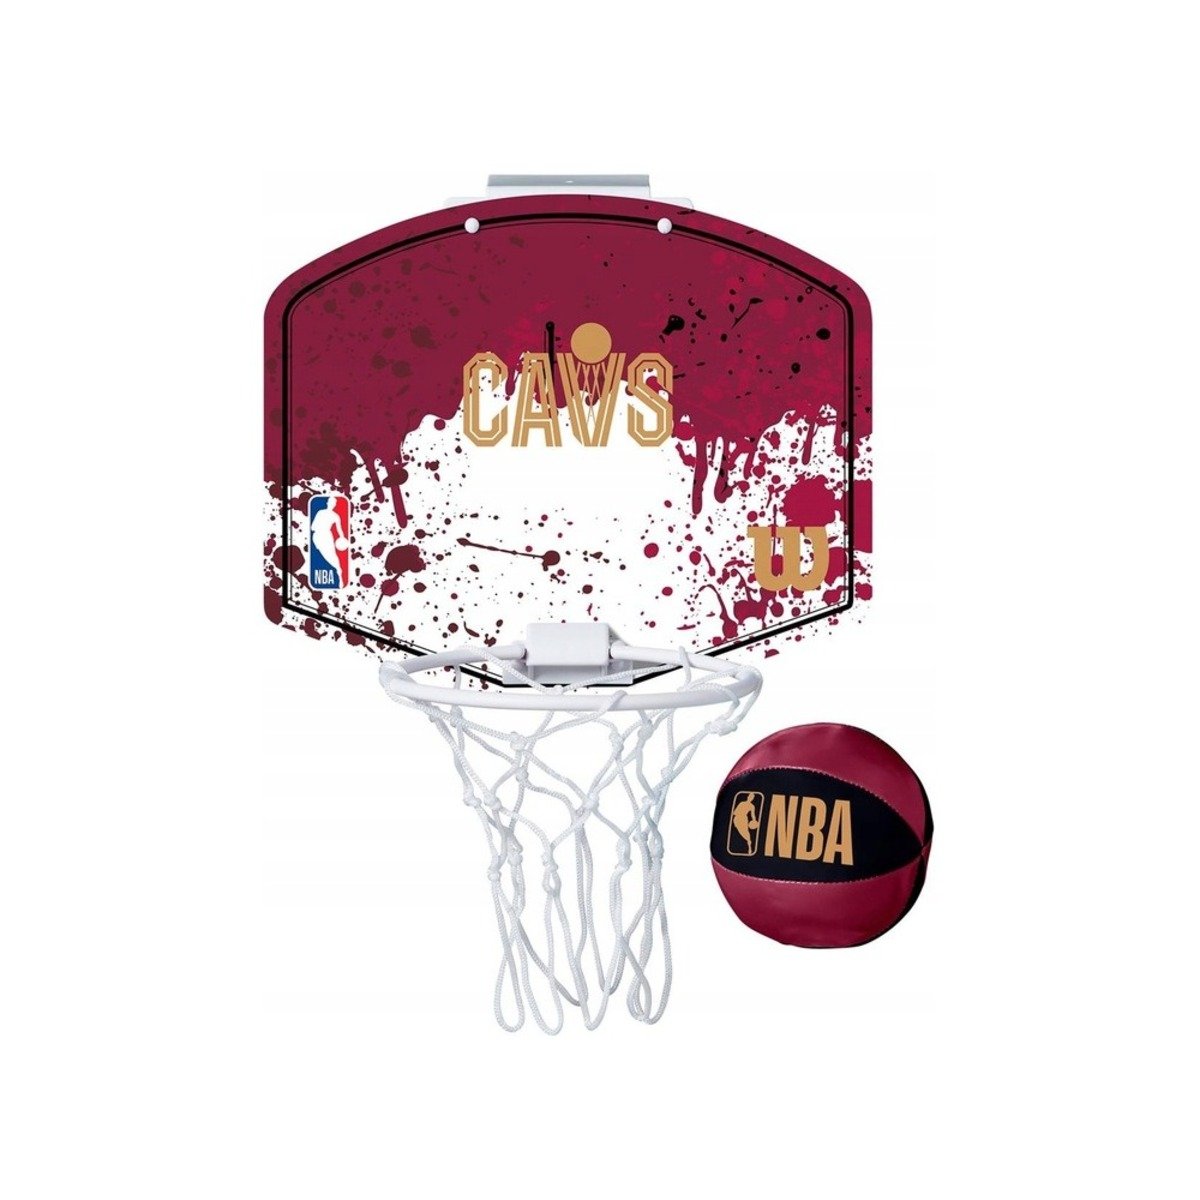 Zdjęcia - Kosz do koszykówki Wilson Mini tablica do koszykówki  NBA Team Mini Hoop Cleveland Cavaliers  